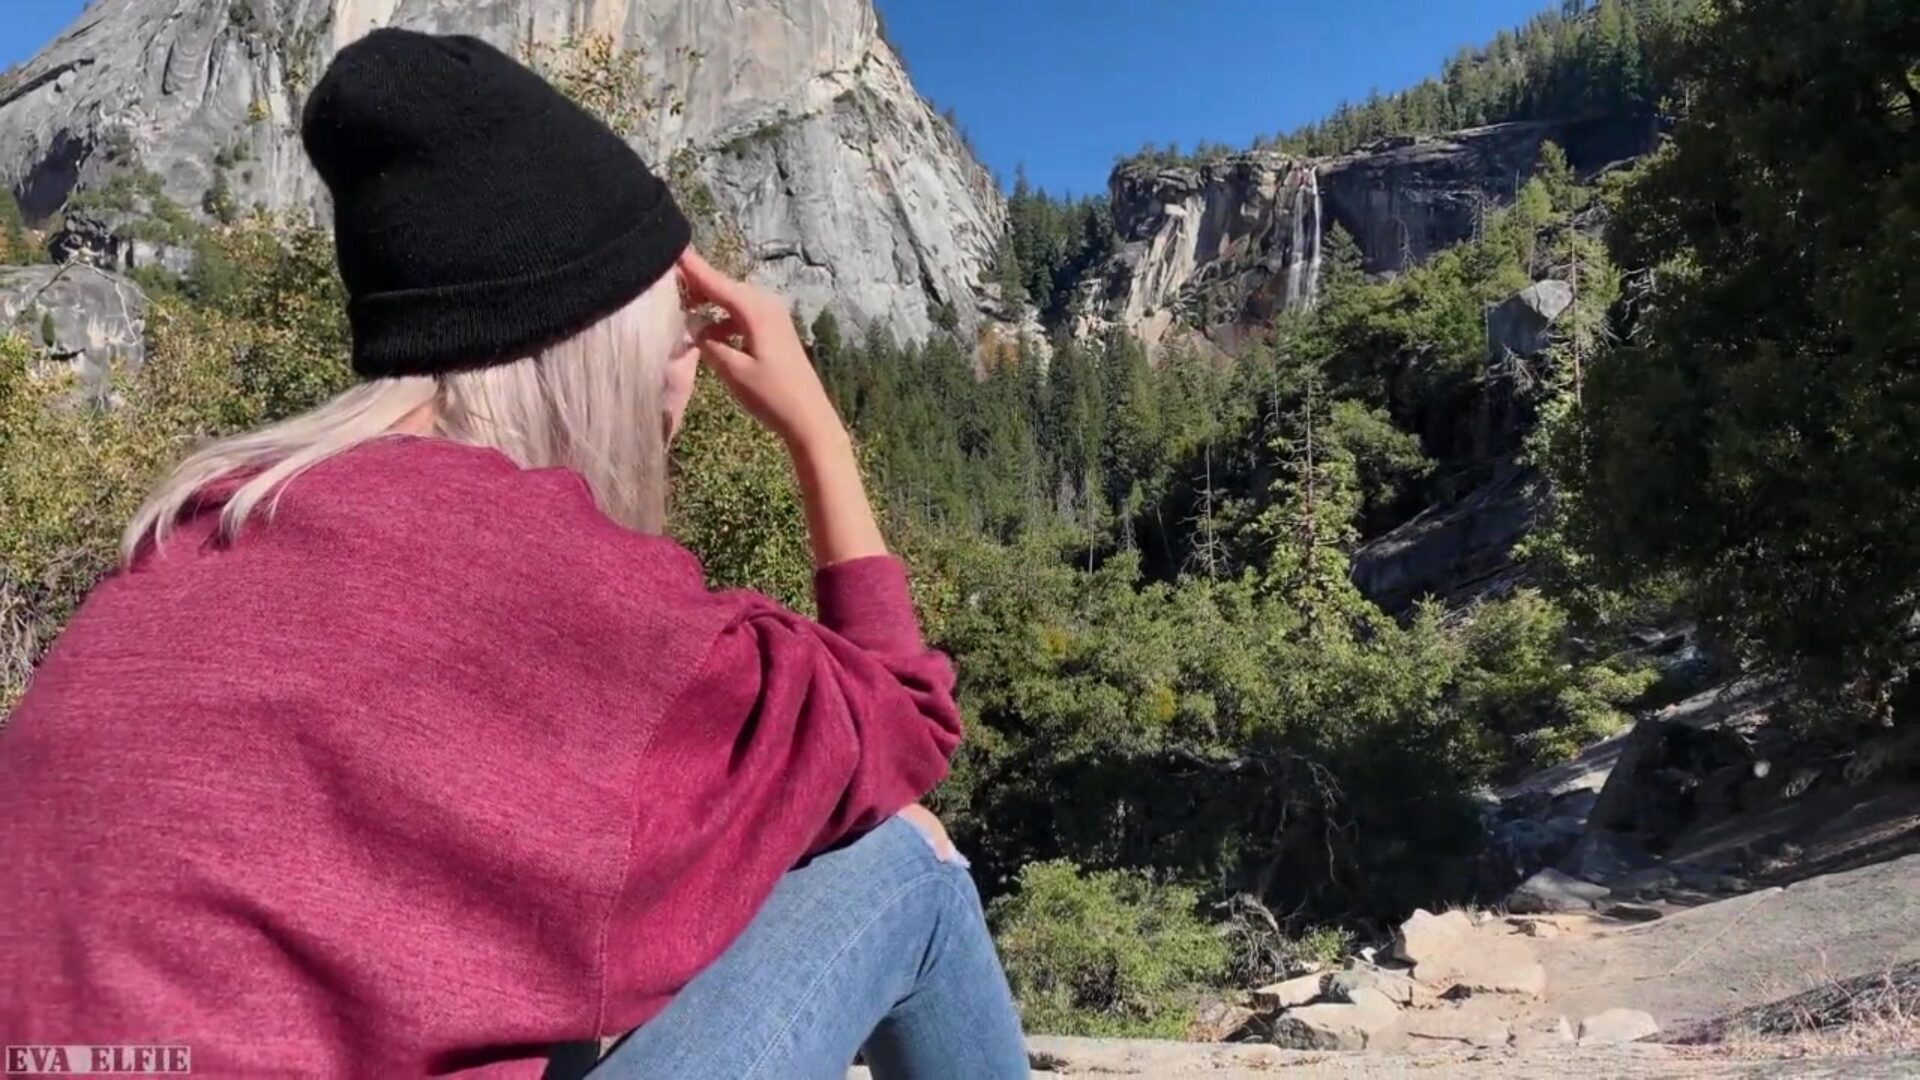 Wandern in Yosemite endet mit einem öffentlichen Blowjob von Sweet Teen - Eva Elfie